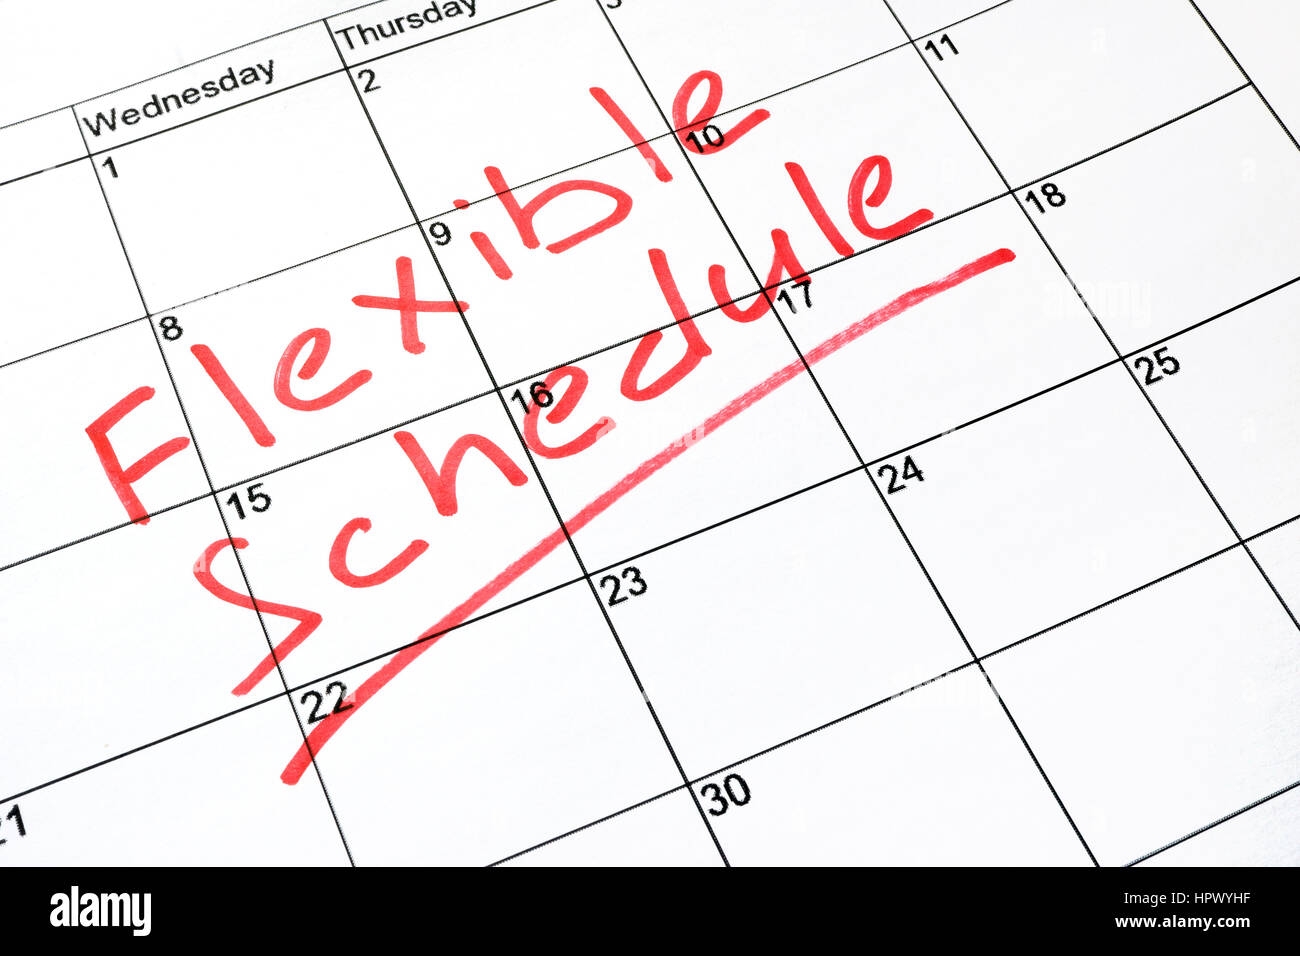 Flexible schedule written on a calendar. Stock Photo